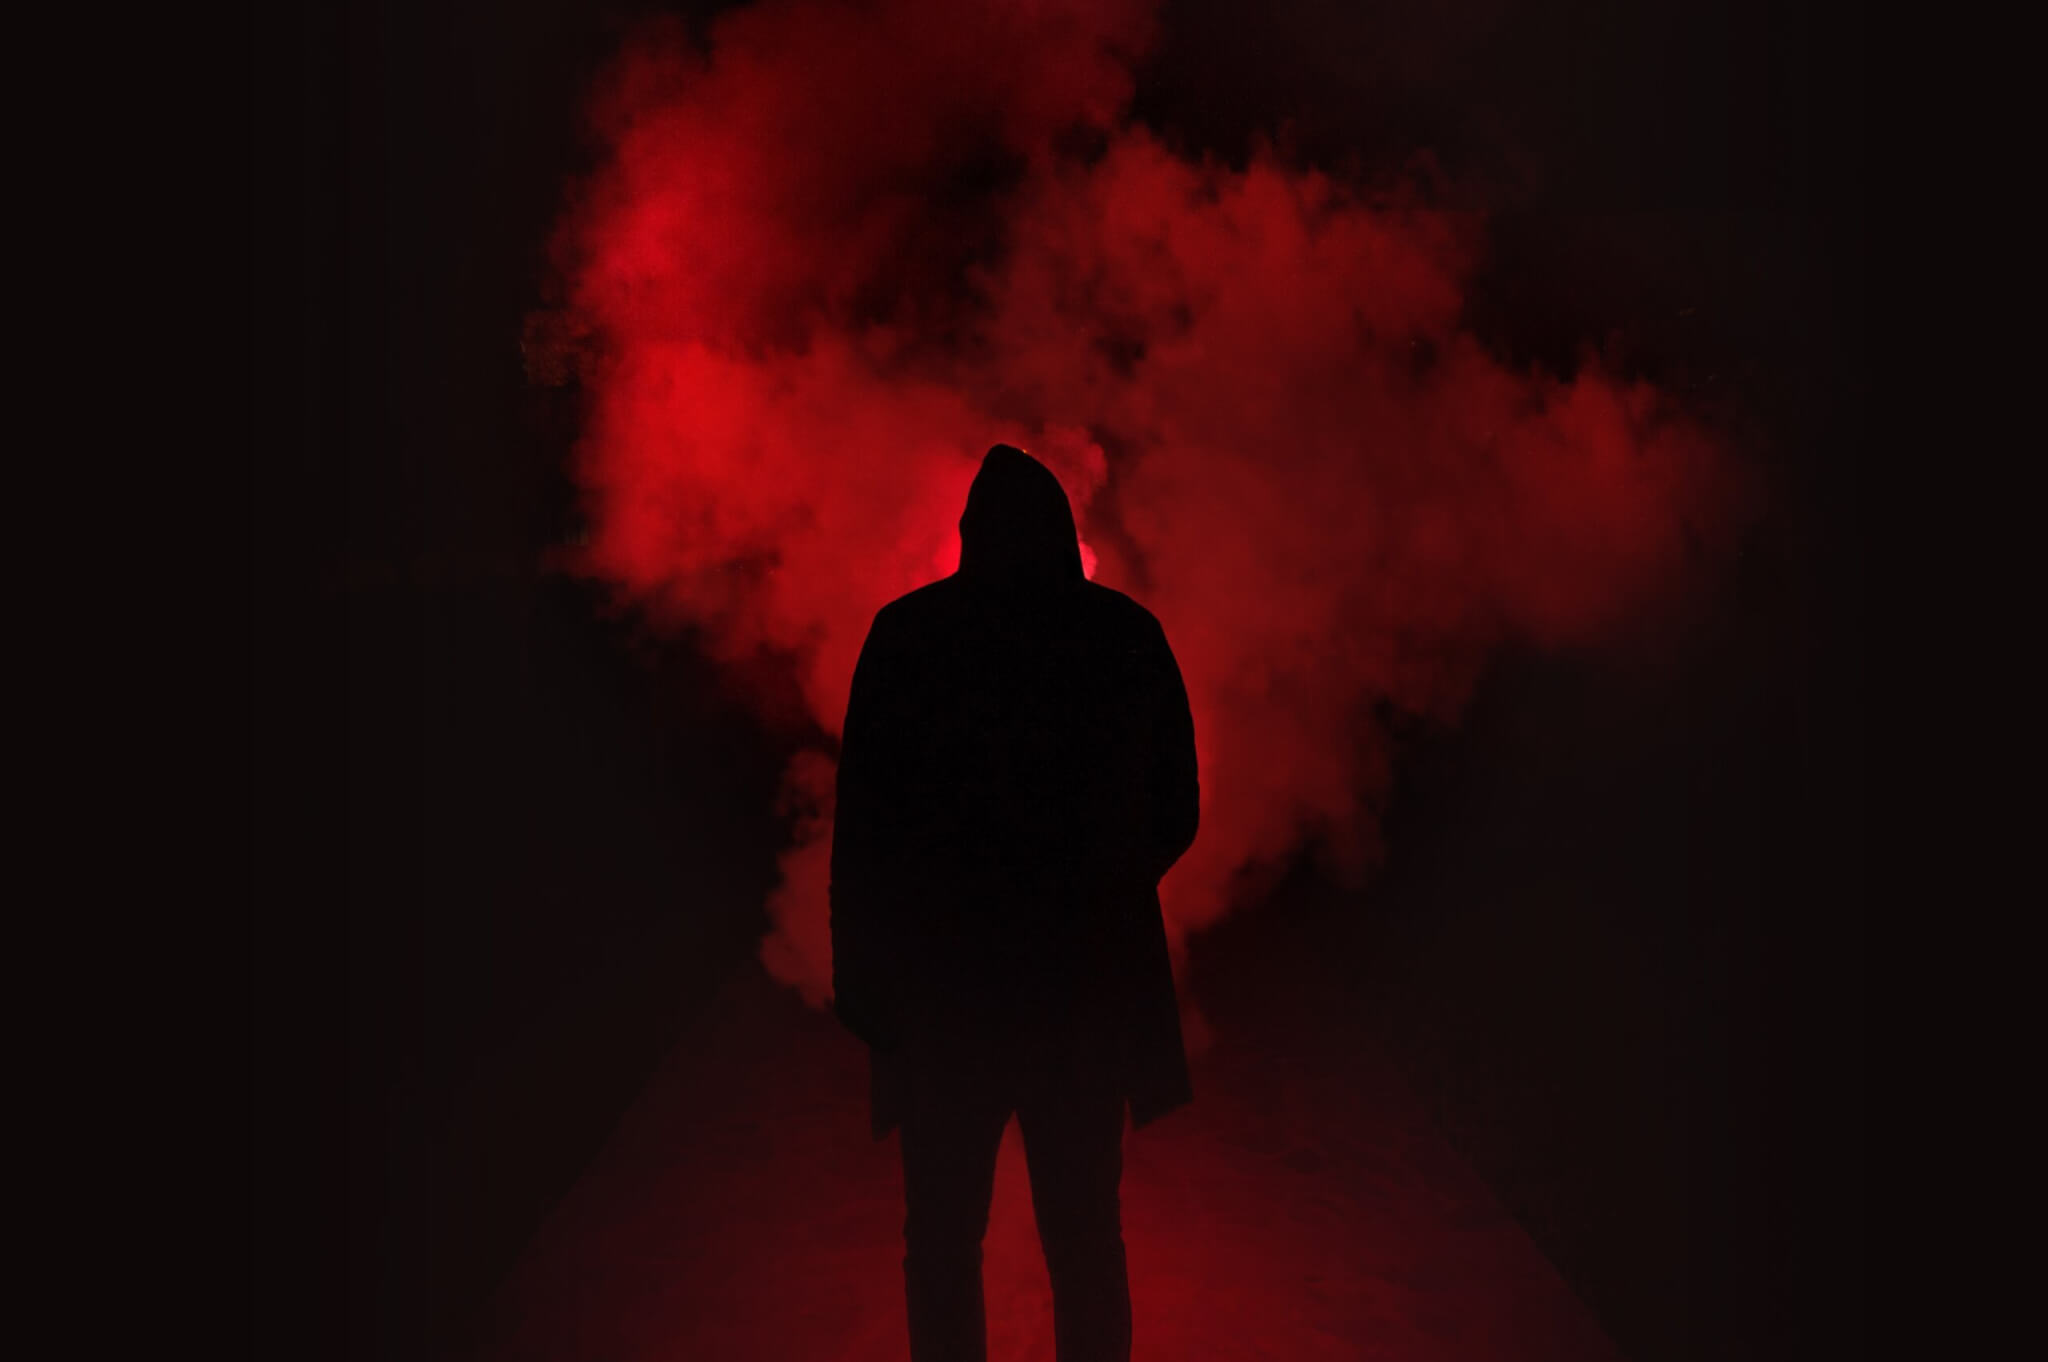 Serial killer's silhouette